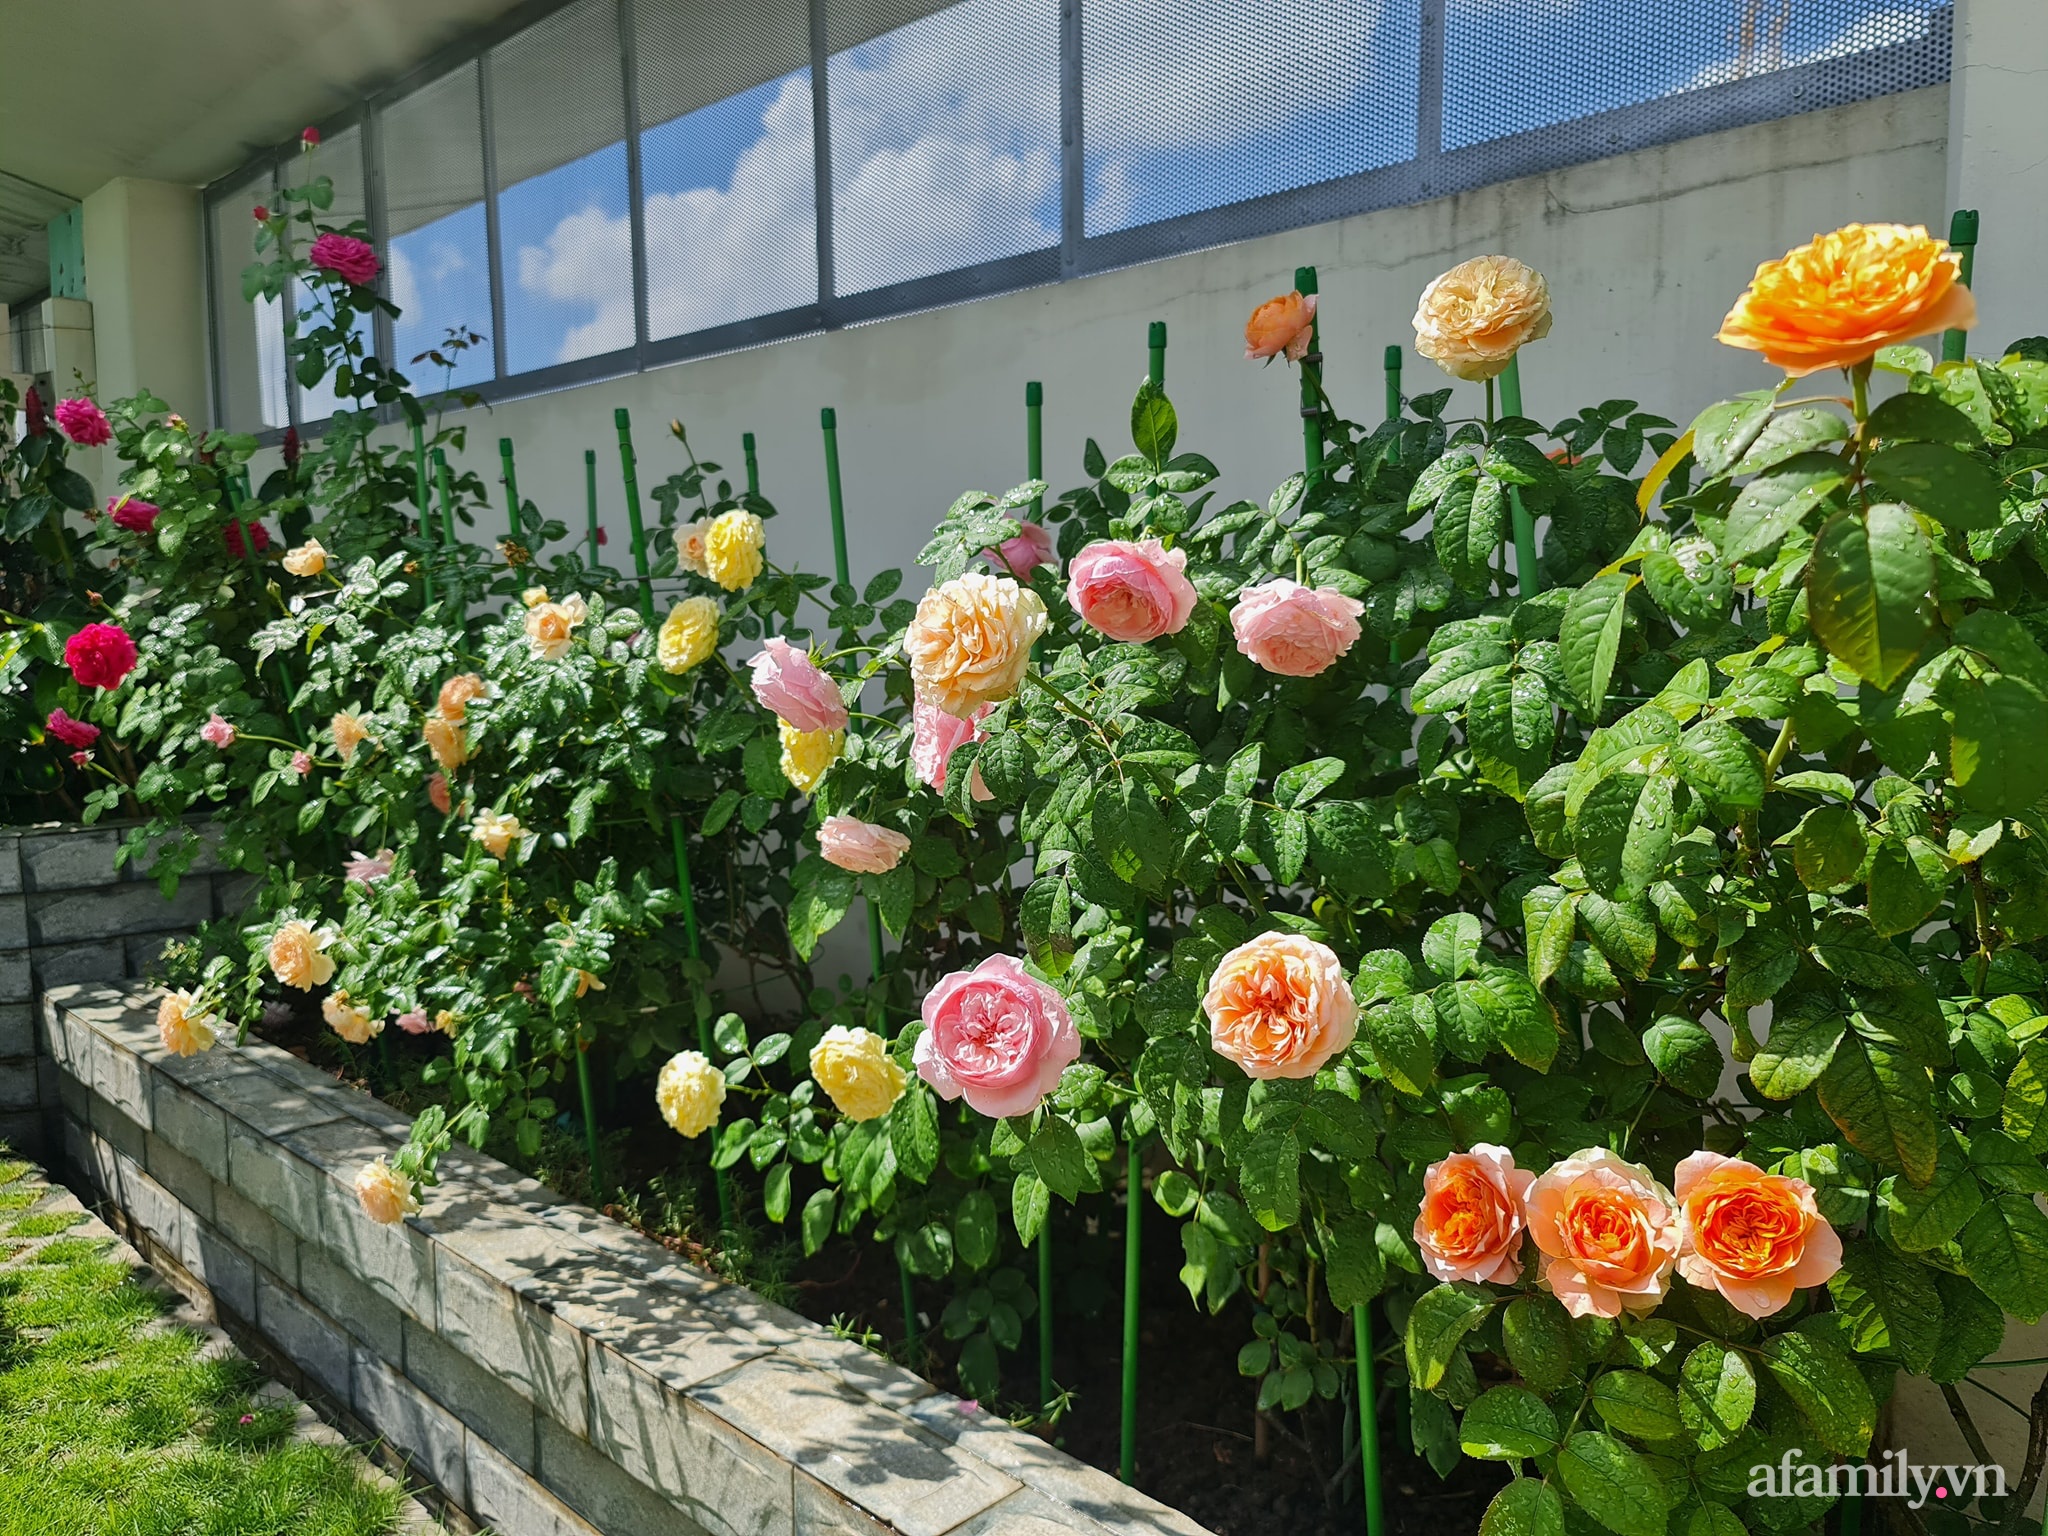 Muôn vàn màu sắc từ những đóa hồng rực rỡ trên sân thượng sẽ đưa bạn đến thế giới giữa mênh mông thành phố. Cho dù là trong phòng khách hay ngoài ban công, vườn hồng trên sân thượng là một lựa chọn hoàn hảo để thiết kế không gian sống lý tưởng.